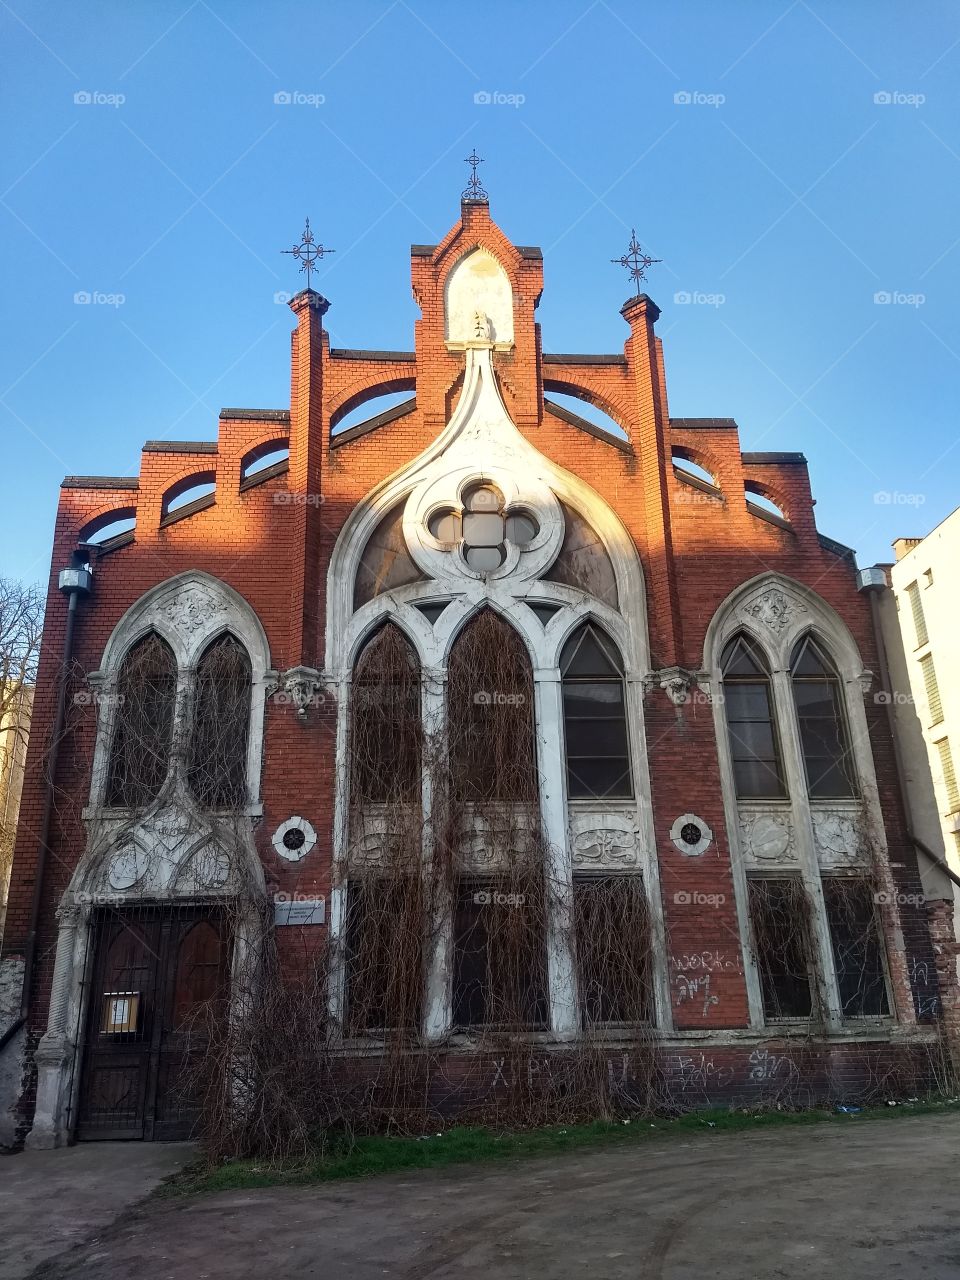 abbandon church